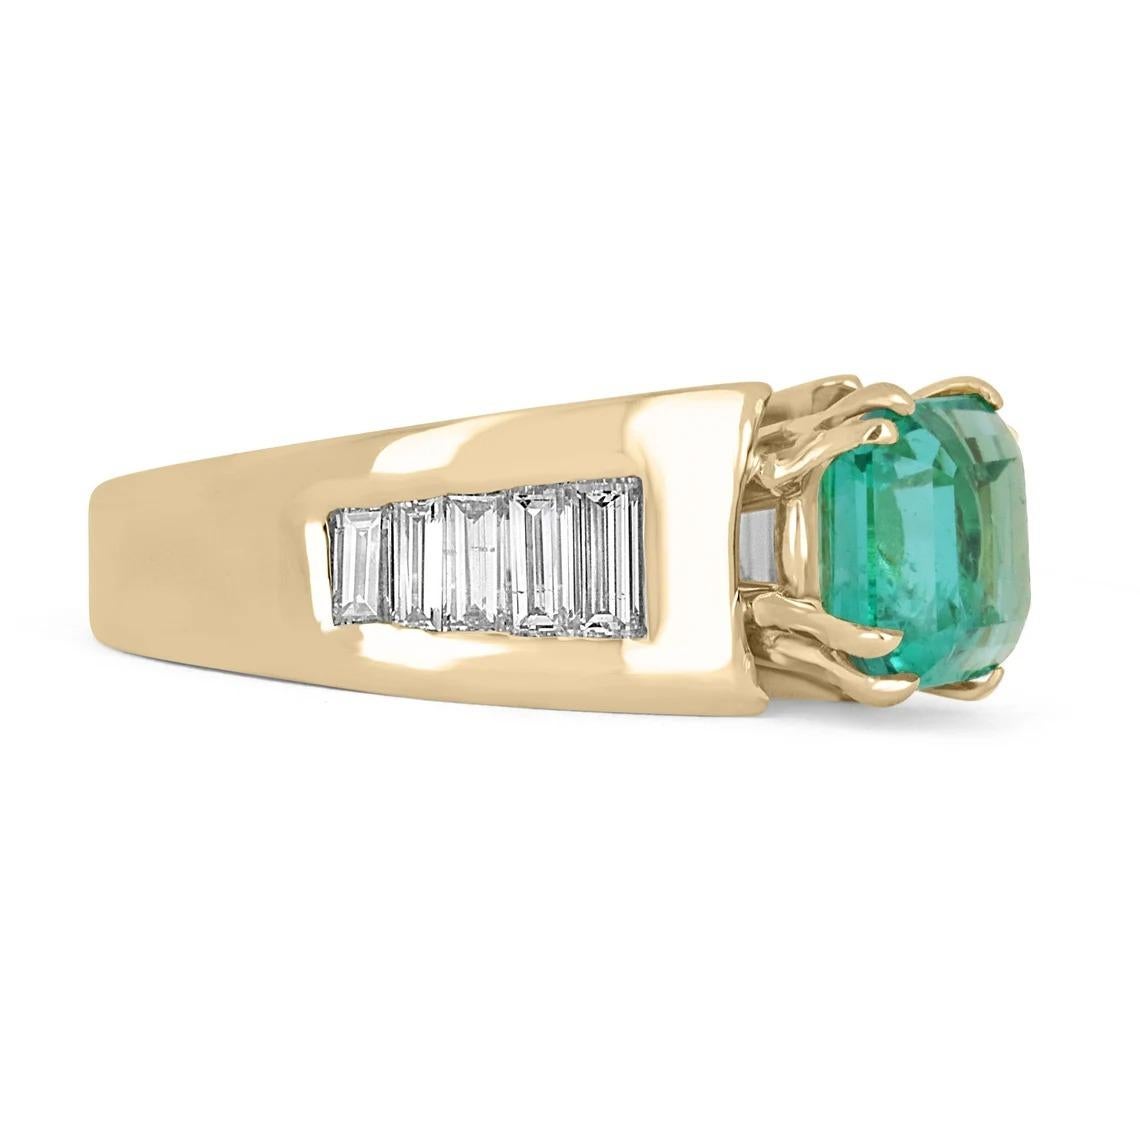 Ein bemerkenswerter Ring mit Smaragd und Diamanten aus Kolumbien. Der Mittelstein trägt einen natürlichen kolumbianischen Smaragd im Asscher-Schliff von 2,71 Karat mit einer atemberaubenden bläulich-grünen Farbe und klarer Augenreinheit. Er ist